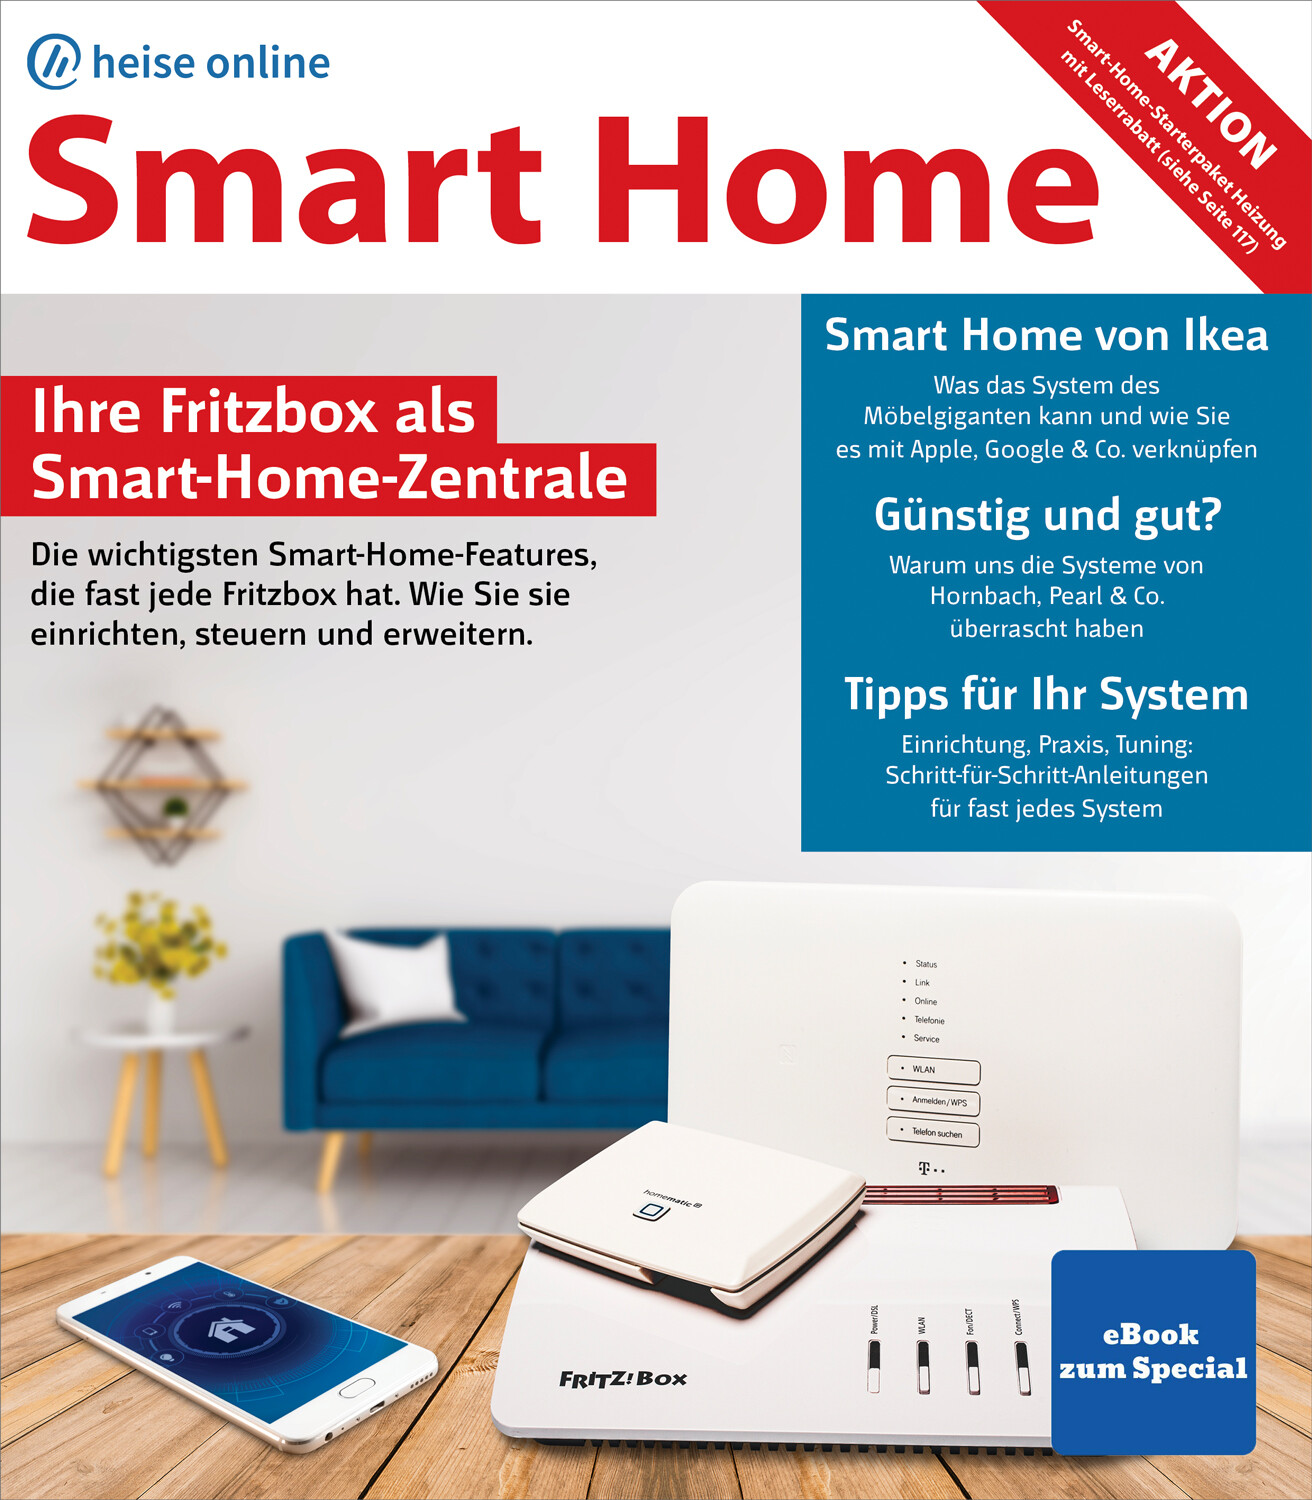 heise online Smart Home (eBook zum Sonderheft)